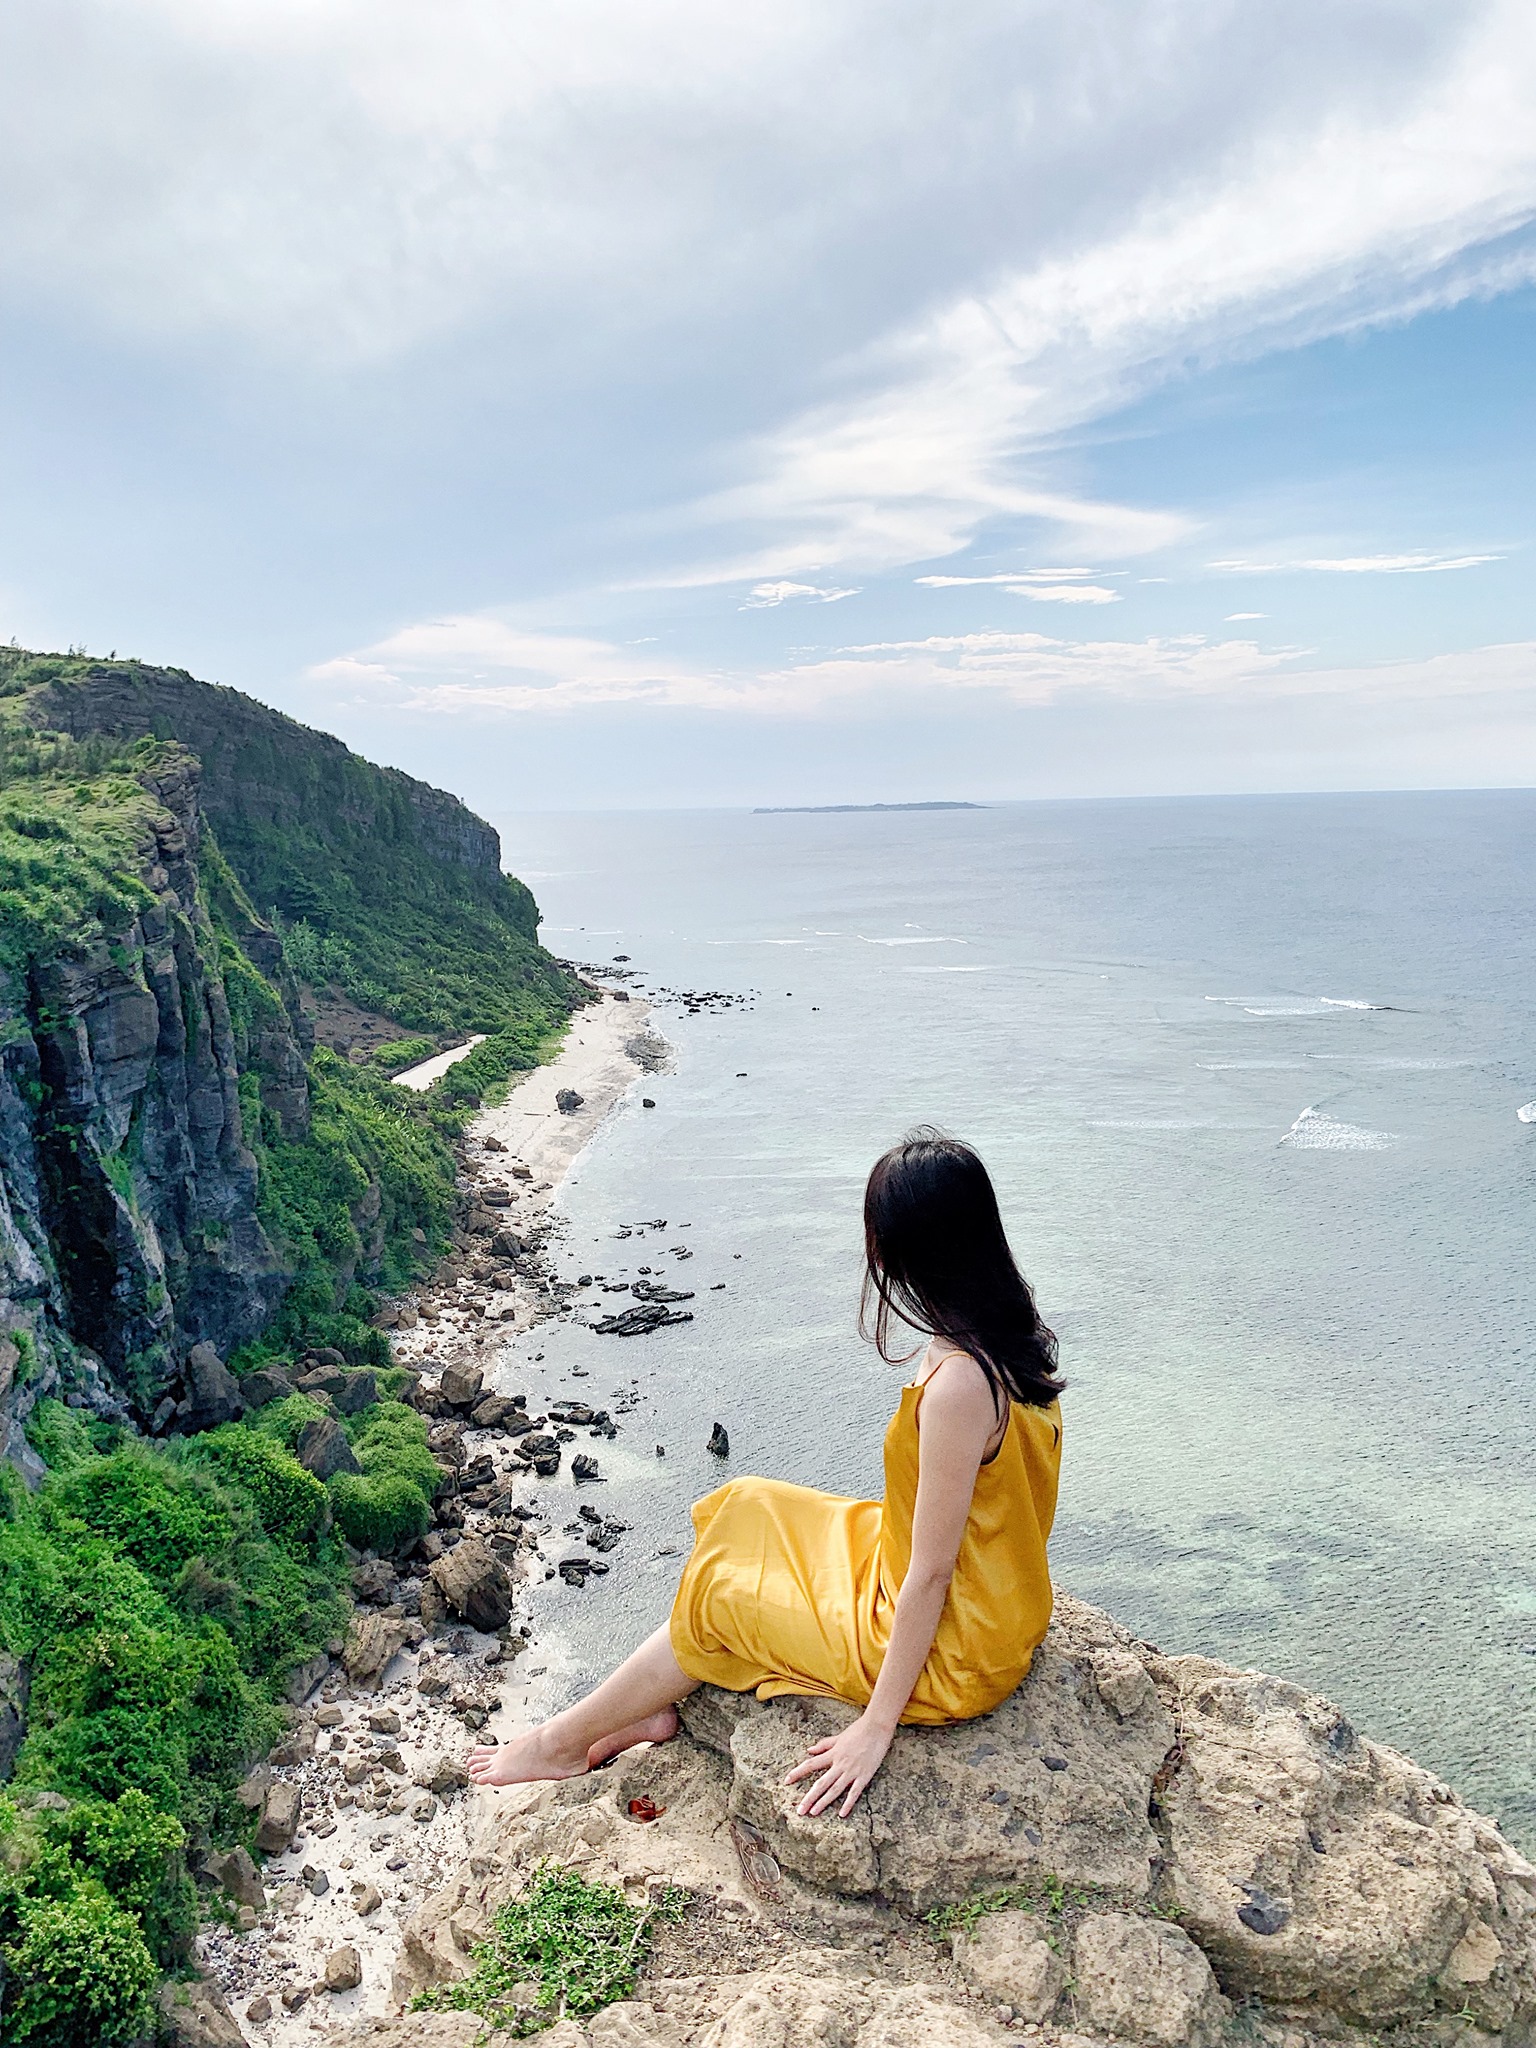 Đảo Lý Sơn dù được nhiều khách du lịch yêu thích nhưng vẫn giữ vẻ đẹp hoang sơ. Hình: Nguyễn Ngọc Bảo Khuyên